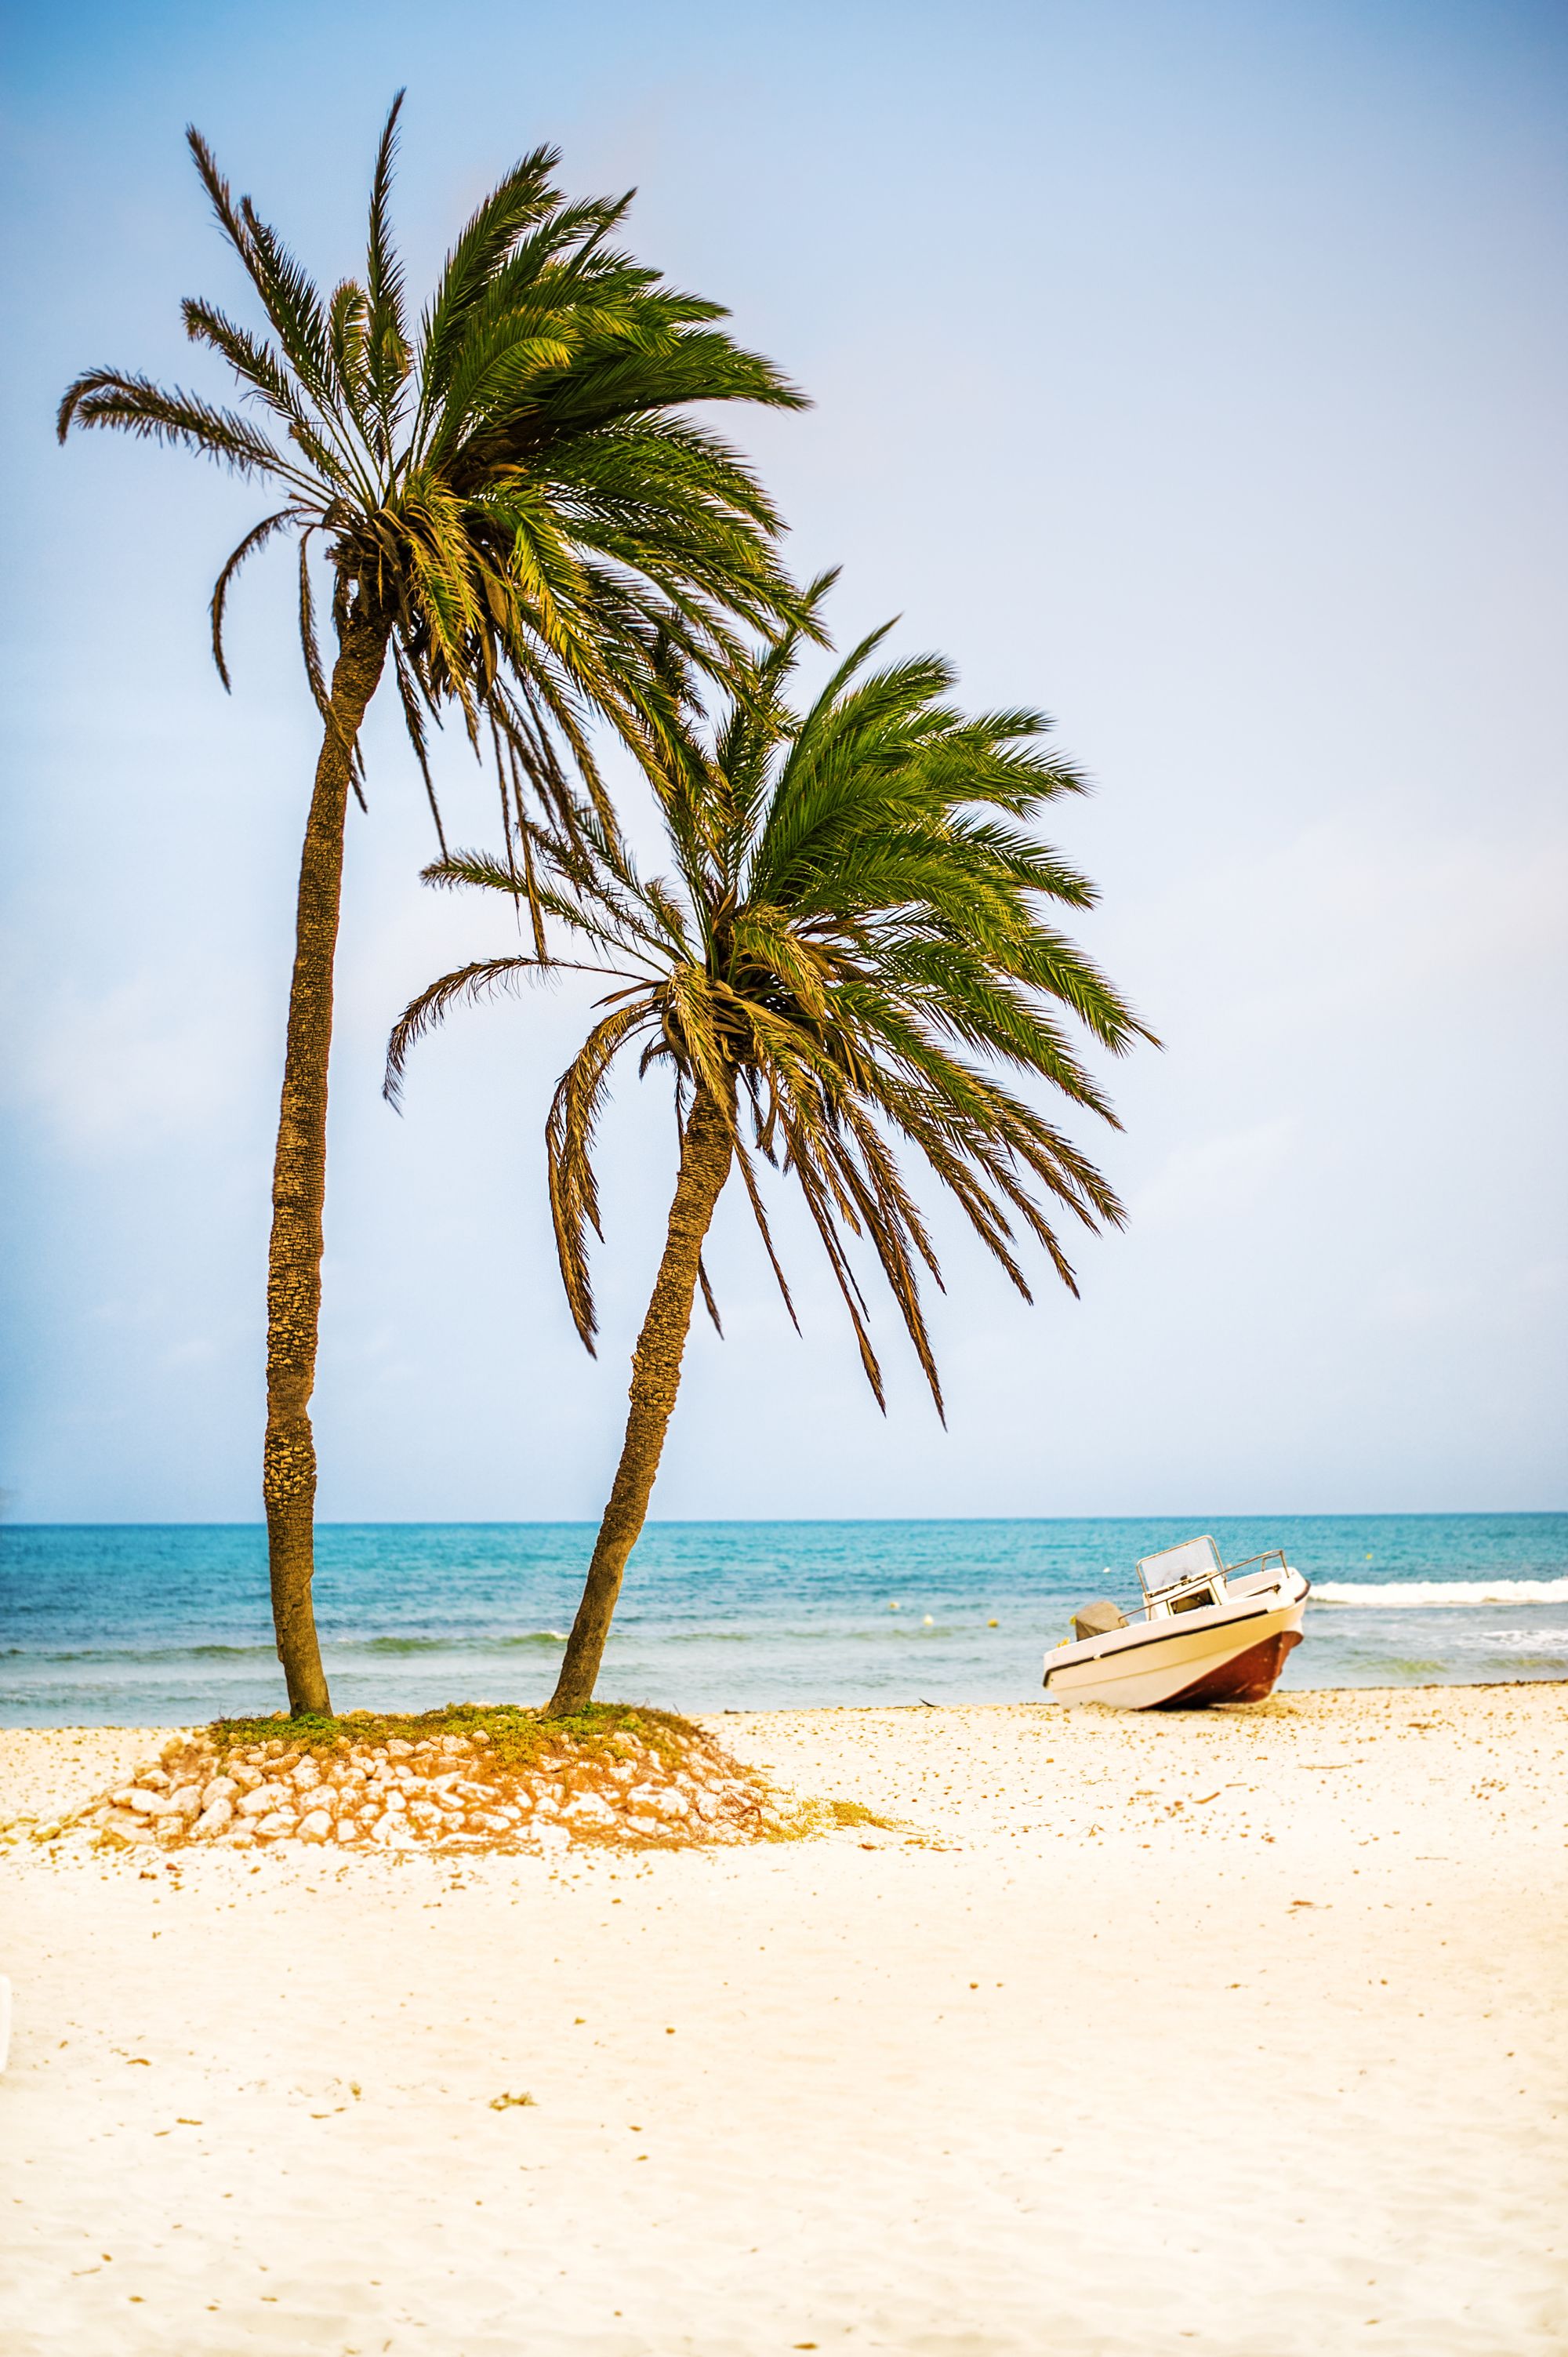 L’île de Djerba : Eau turquoise et sable blanc